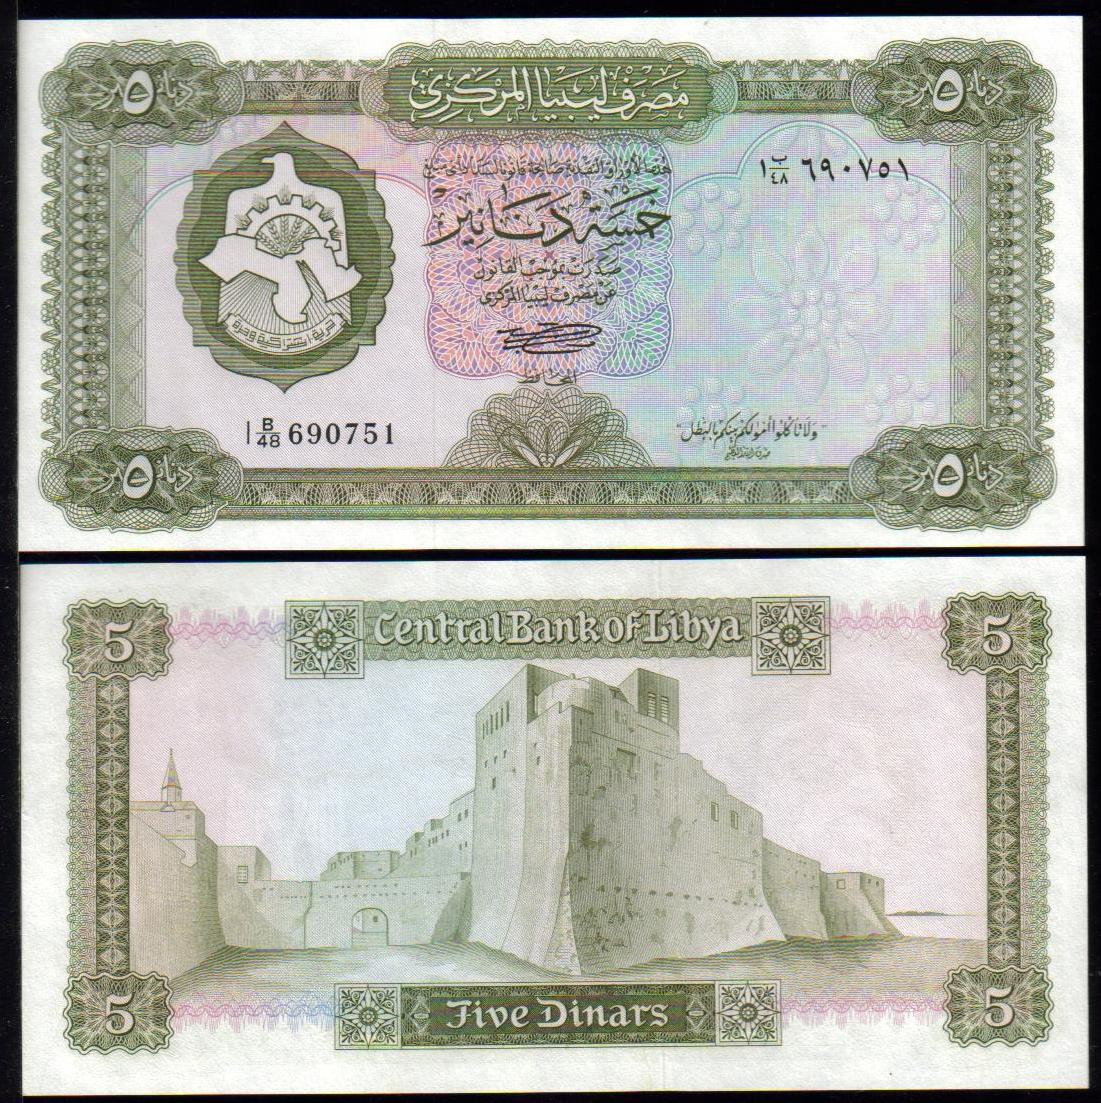 <font color=red><b>Libya Pick 36b UNC, <font color=green><u>Prefix 1</font></u></font></b>  5 Dinar. With inscription.  Sign. #1. <img border="0" src="http://mebanknotes.com/shop/catalog/images/Libya-Sign-01.jpg"> <a href="/shop/catalog/images/Libya-Pick-36b.jpg"> <font color=green><b>View the image</b></a></font>